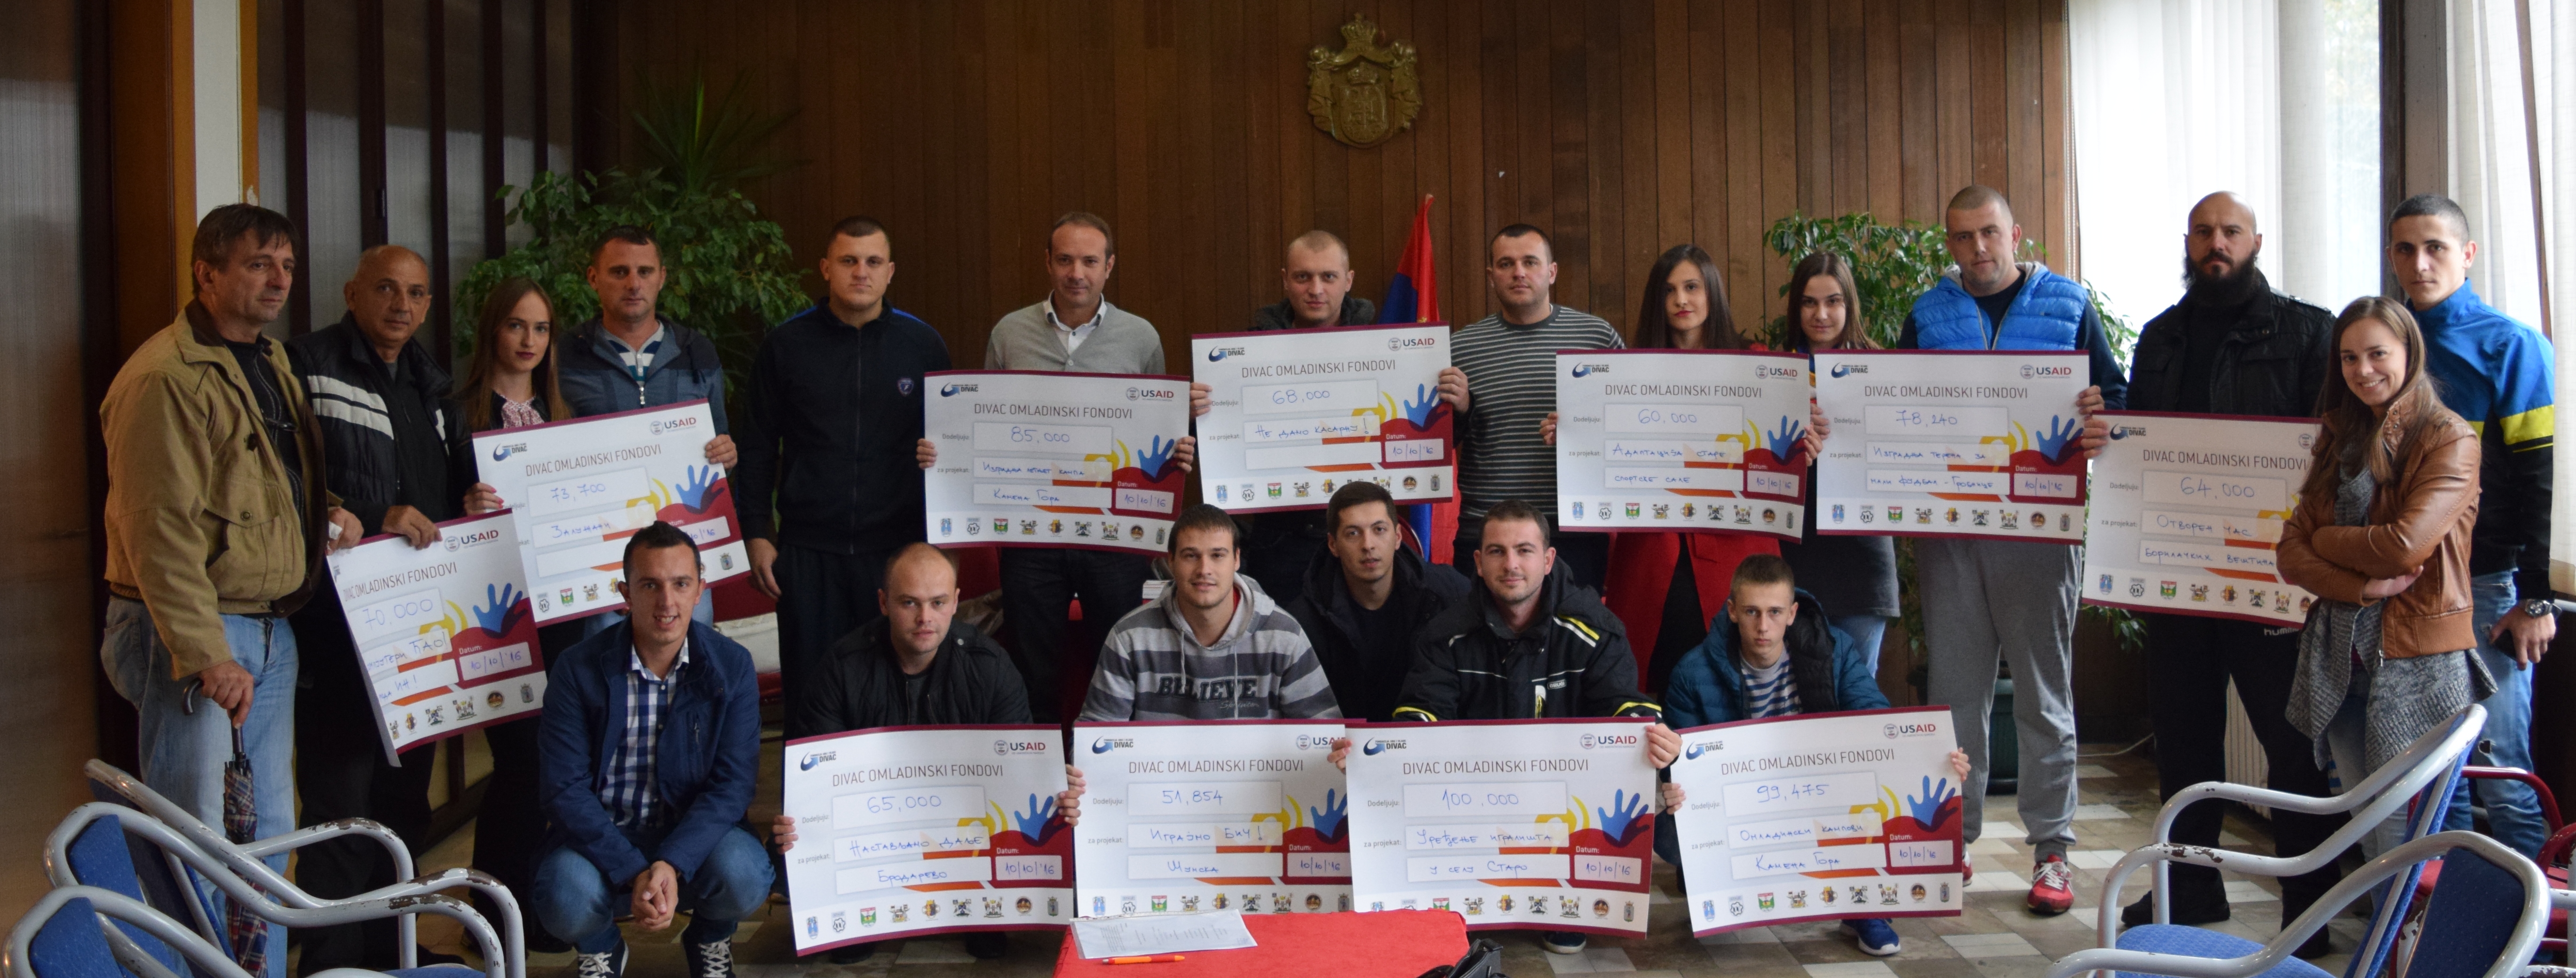 У Пријепољу одобрено 13 омладинских пројеката у оквиру конкурса Дивац омладински фондови